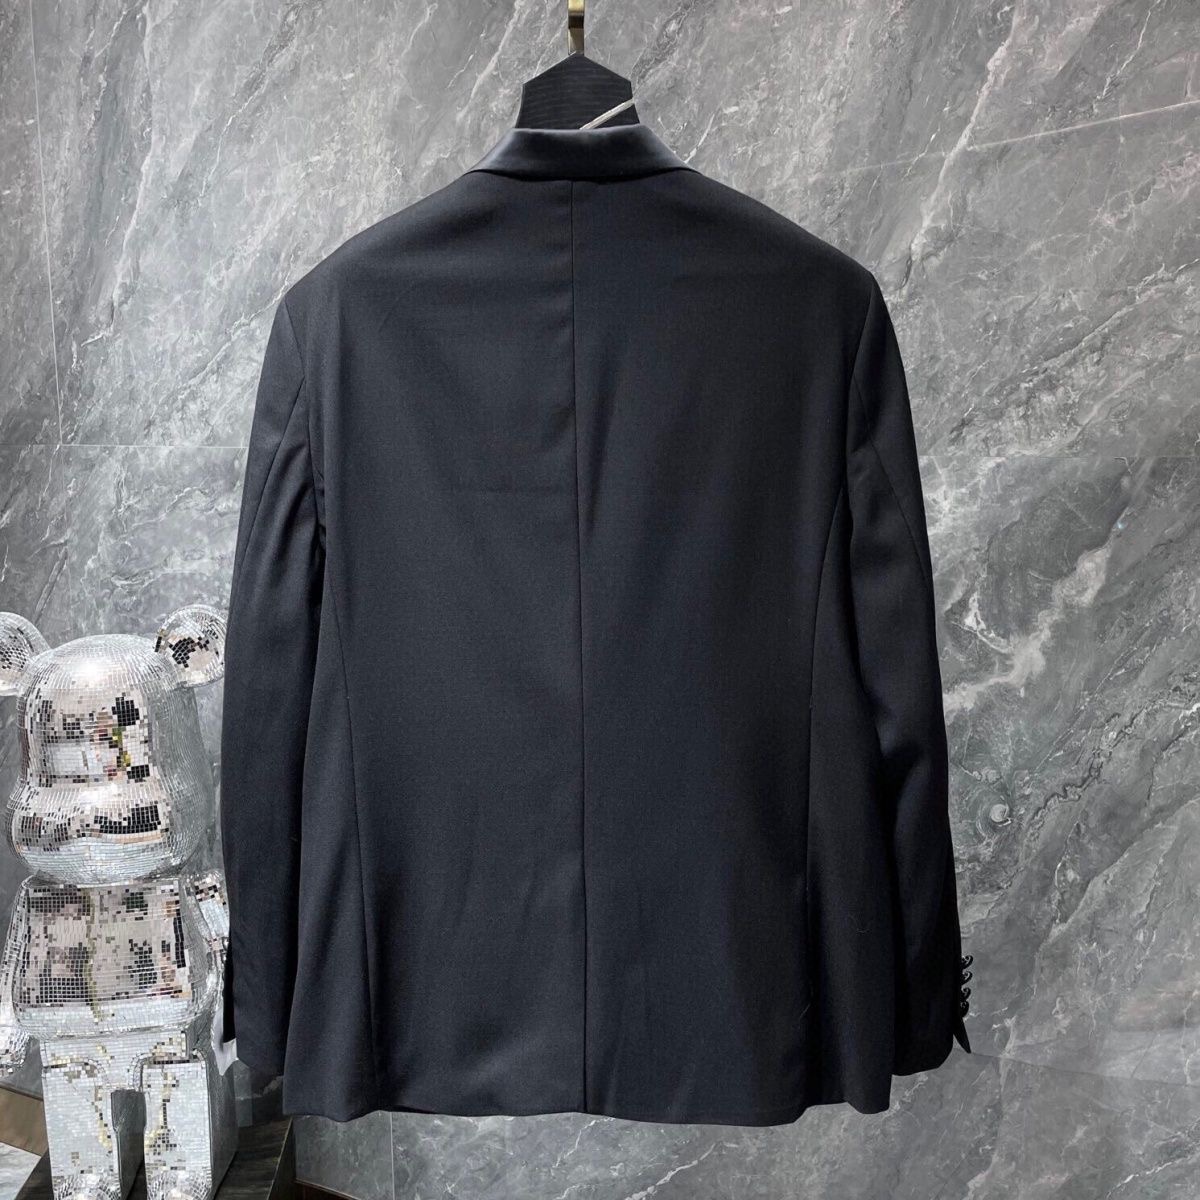 Desinger Men Blazer jacket Cotton Linen Fashion Coat Designer Jackets classic Business Casual Slim Fit Formal Suit Blazer Men Suits Styles top